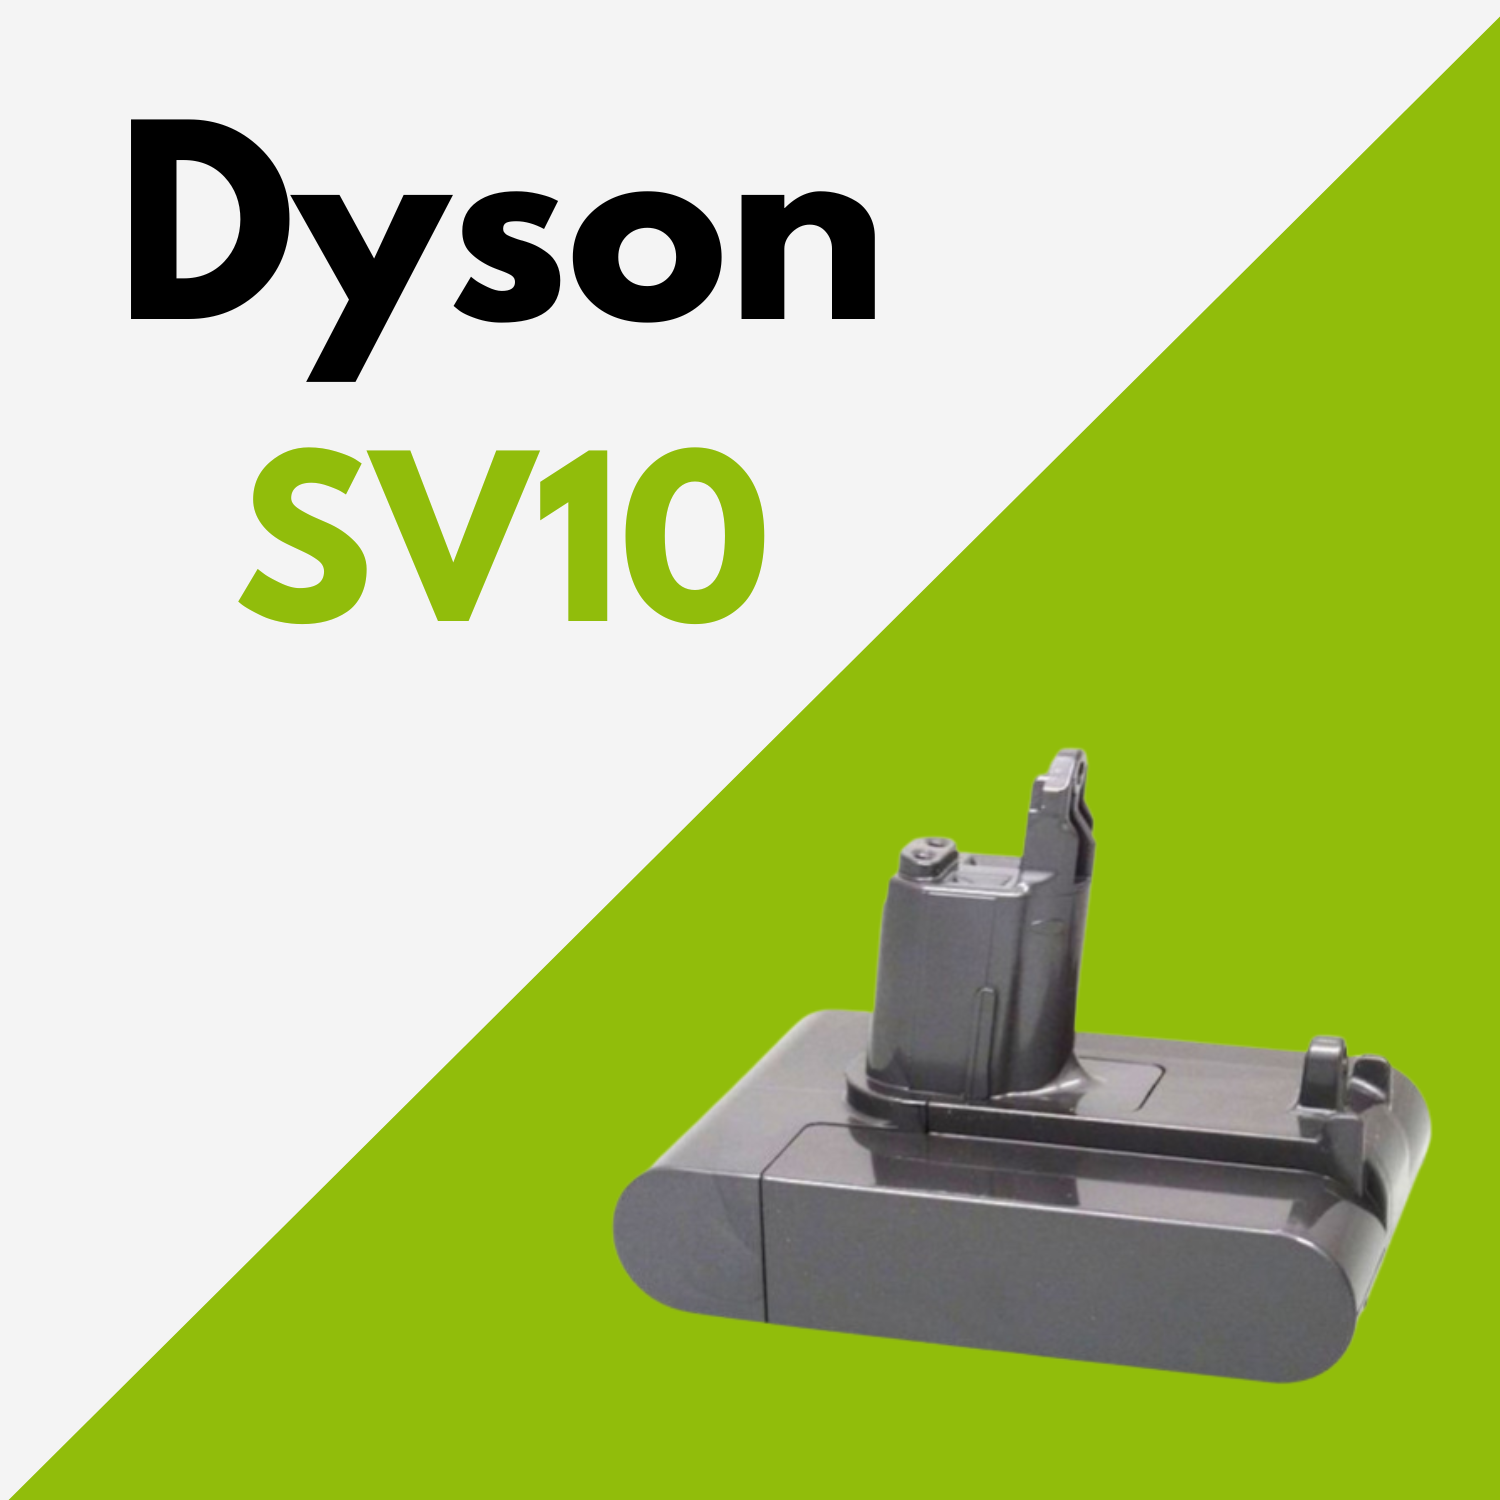 Batterie Dyson SV10 au meilleur prix ! [PROMO]